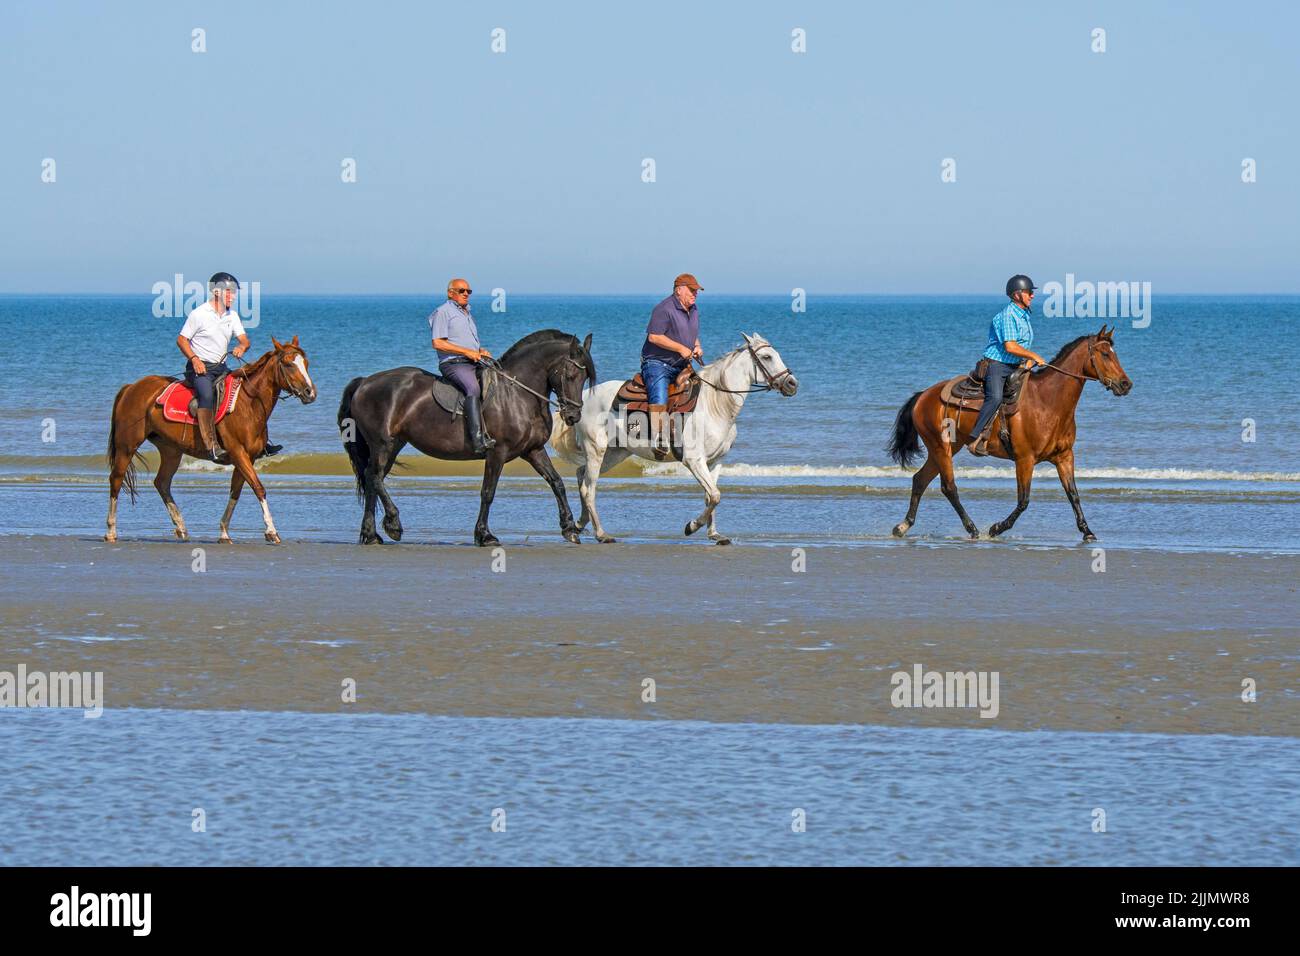 Cuatro jinetes mayores / ancianos / jinetes a caballo a caballo en la playa de arena a lo largo de la costa del Mar del Norte en verano Foto de stock